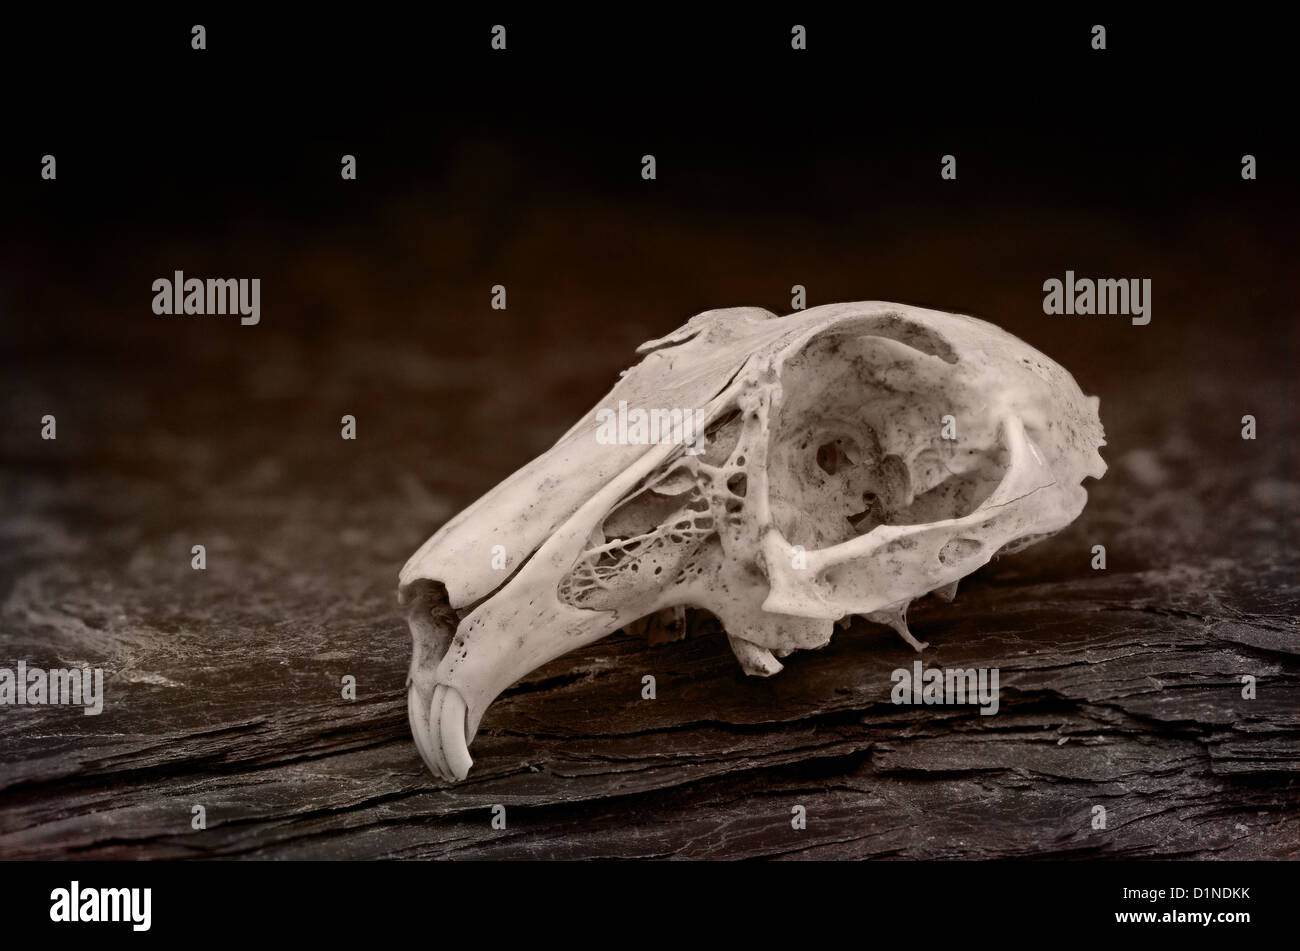 Weathered crâne de lapin montrant la ligne de suture des os du crâne et de l'anatomie de la région nasale crâne structure physiologie Banque D'Images